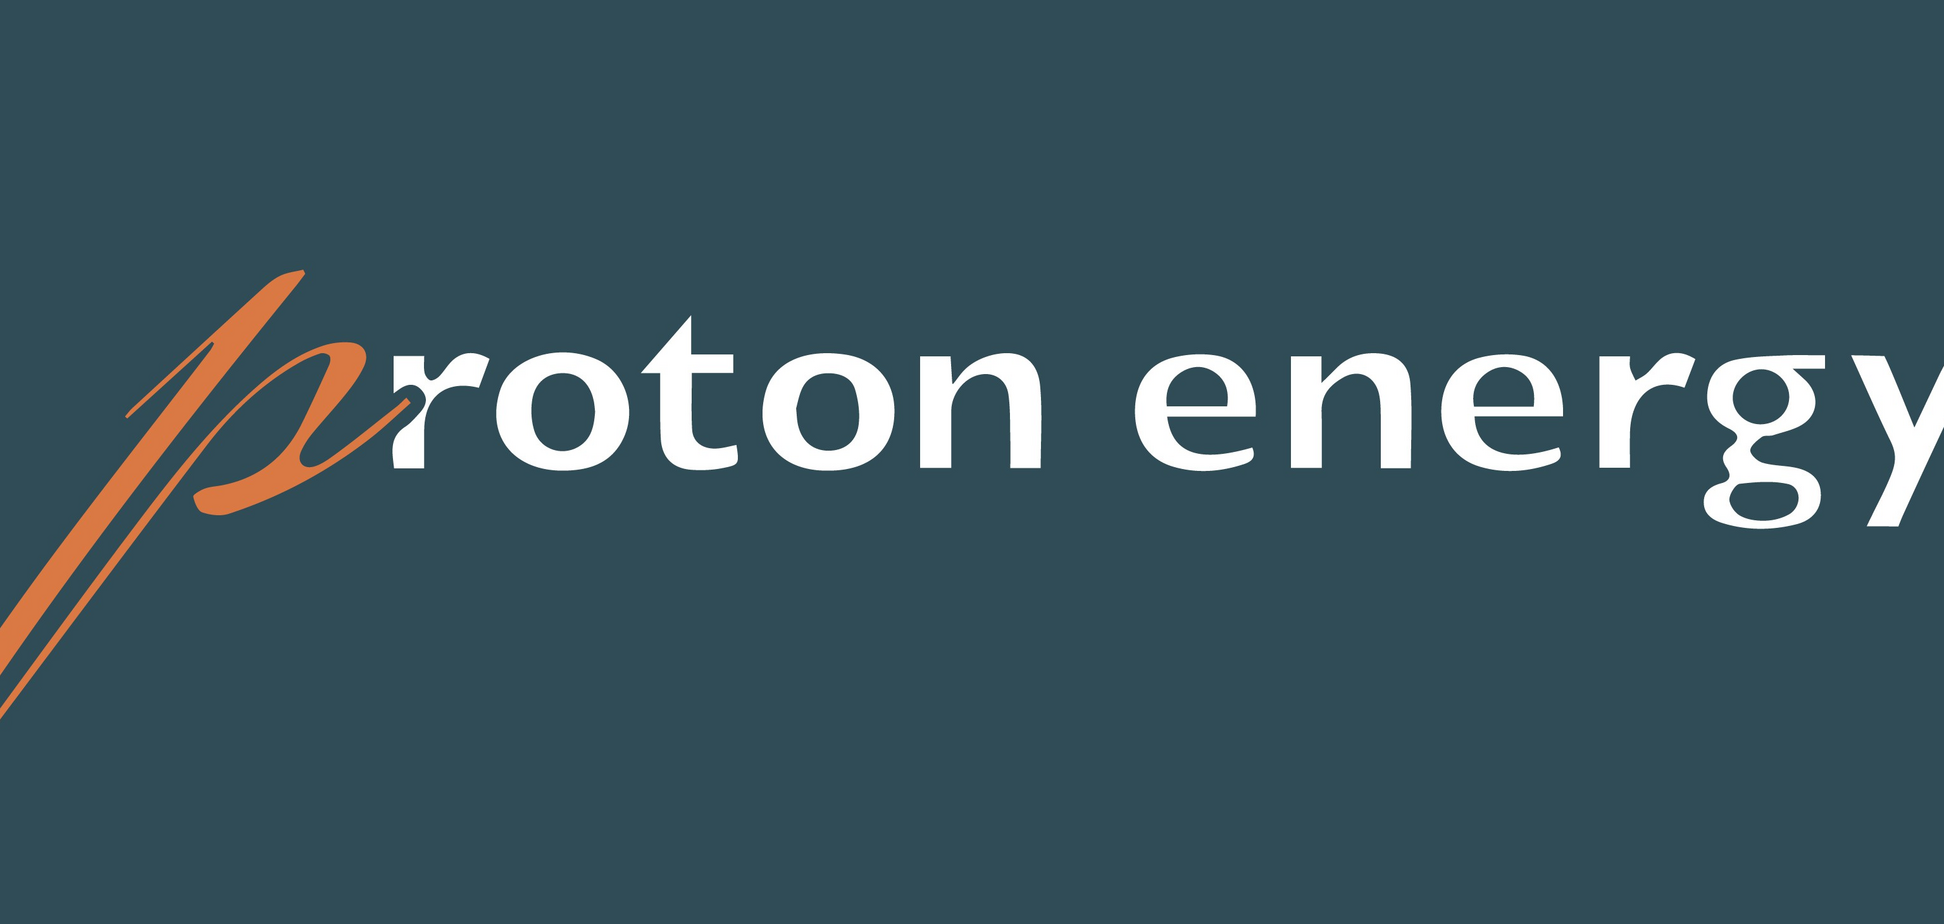 Proton Energy Group заявляет о заказной кампании против нее и выражает обеспокоенность политизированностью рынка газа